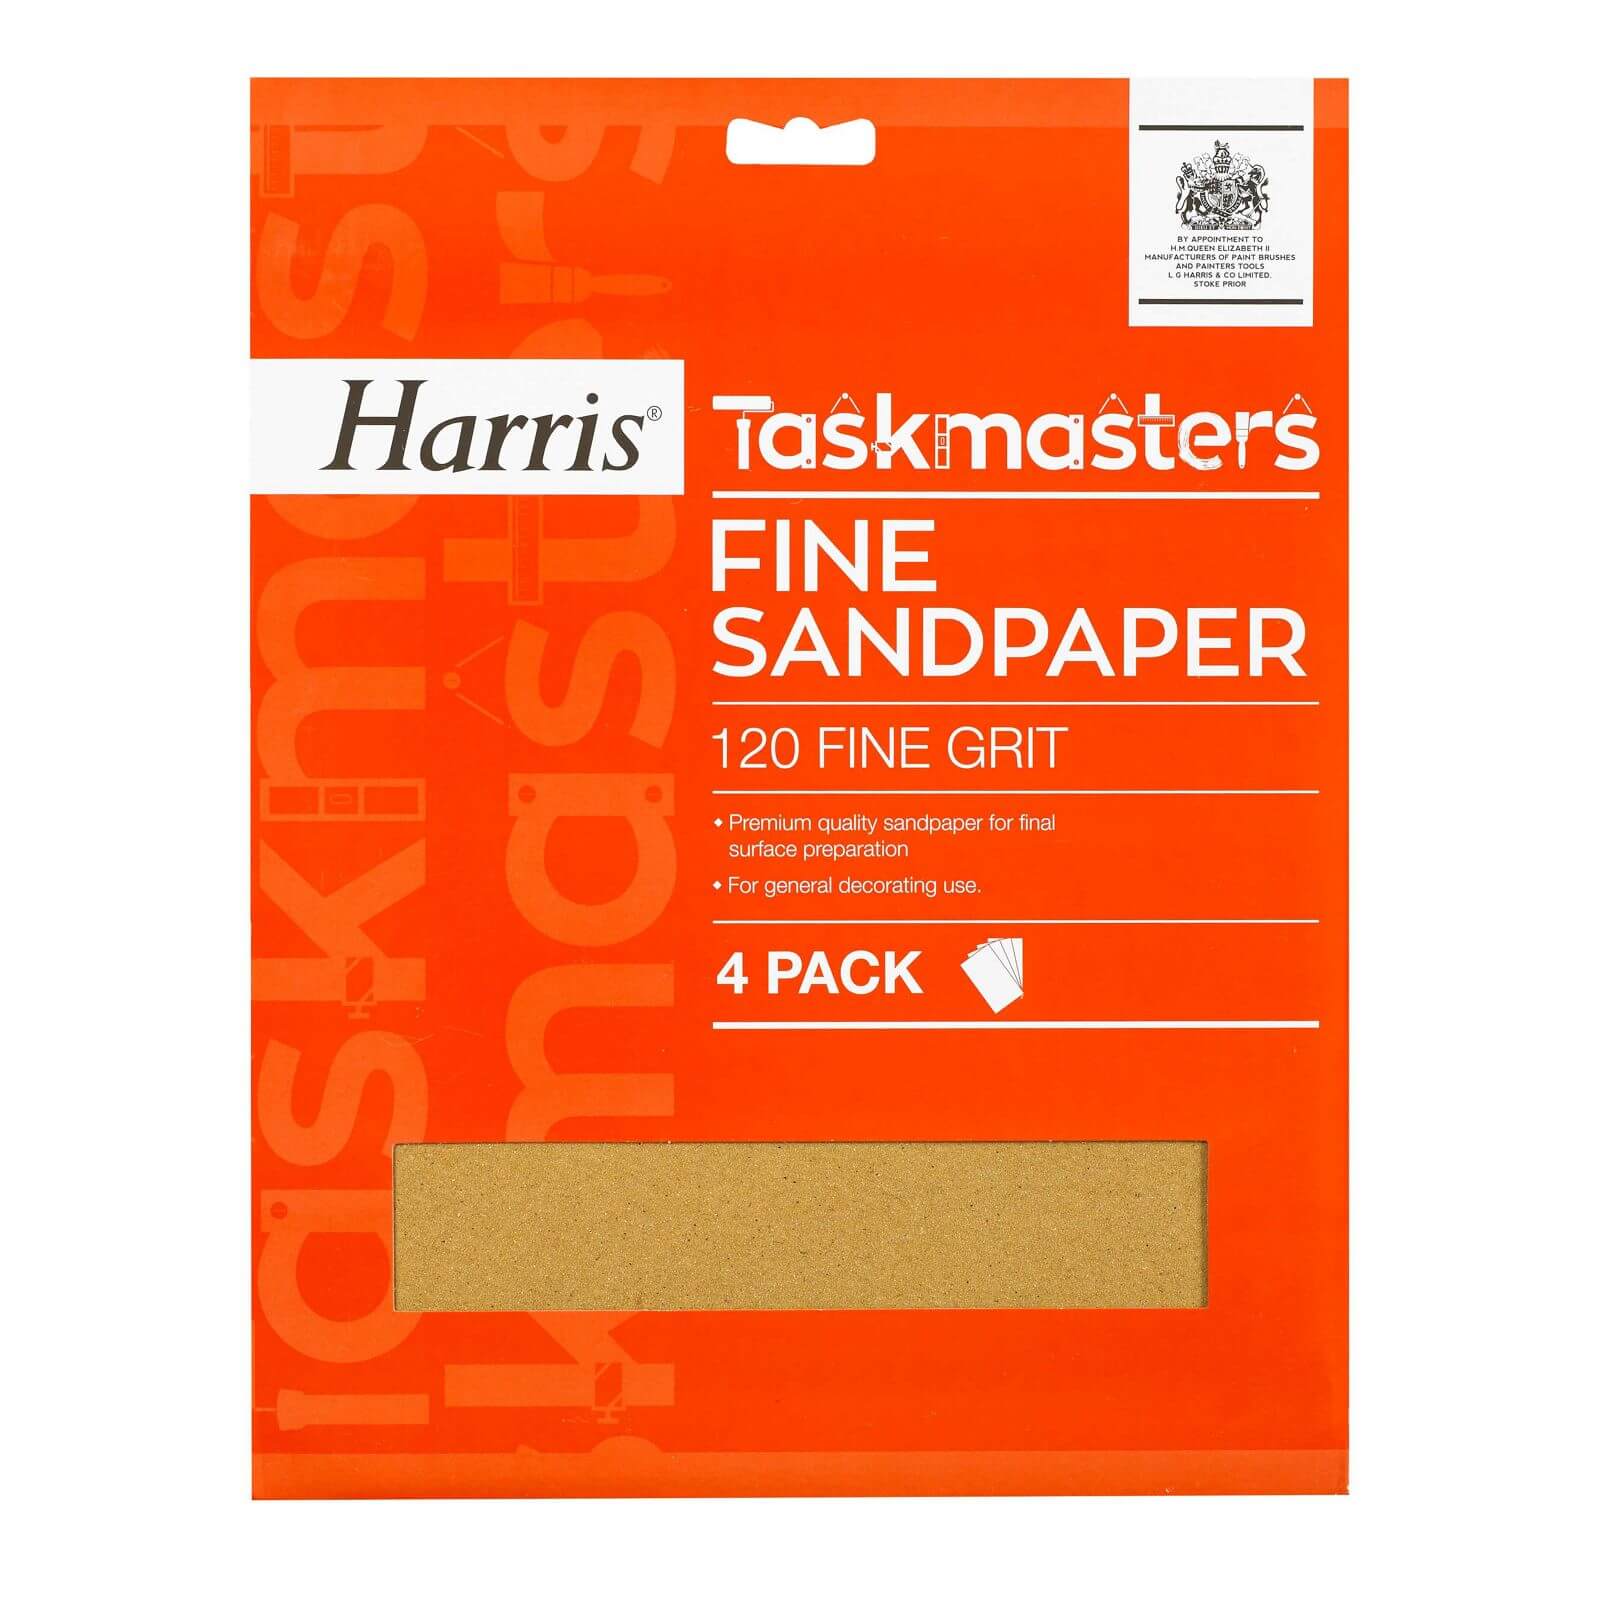 Harris Taskmasters Fine Sandpaper - 4 Pack